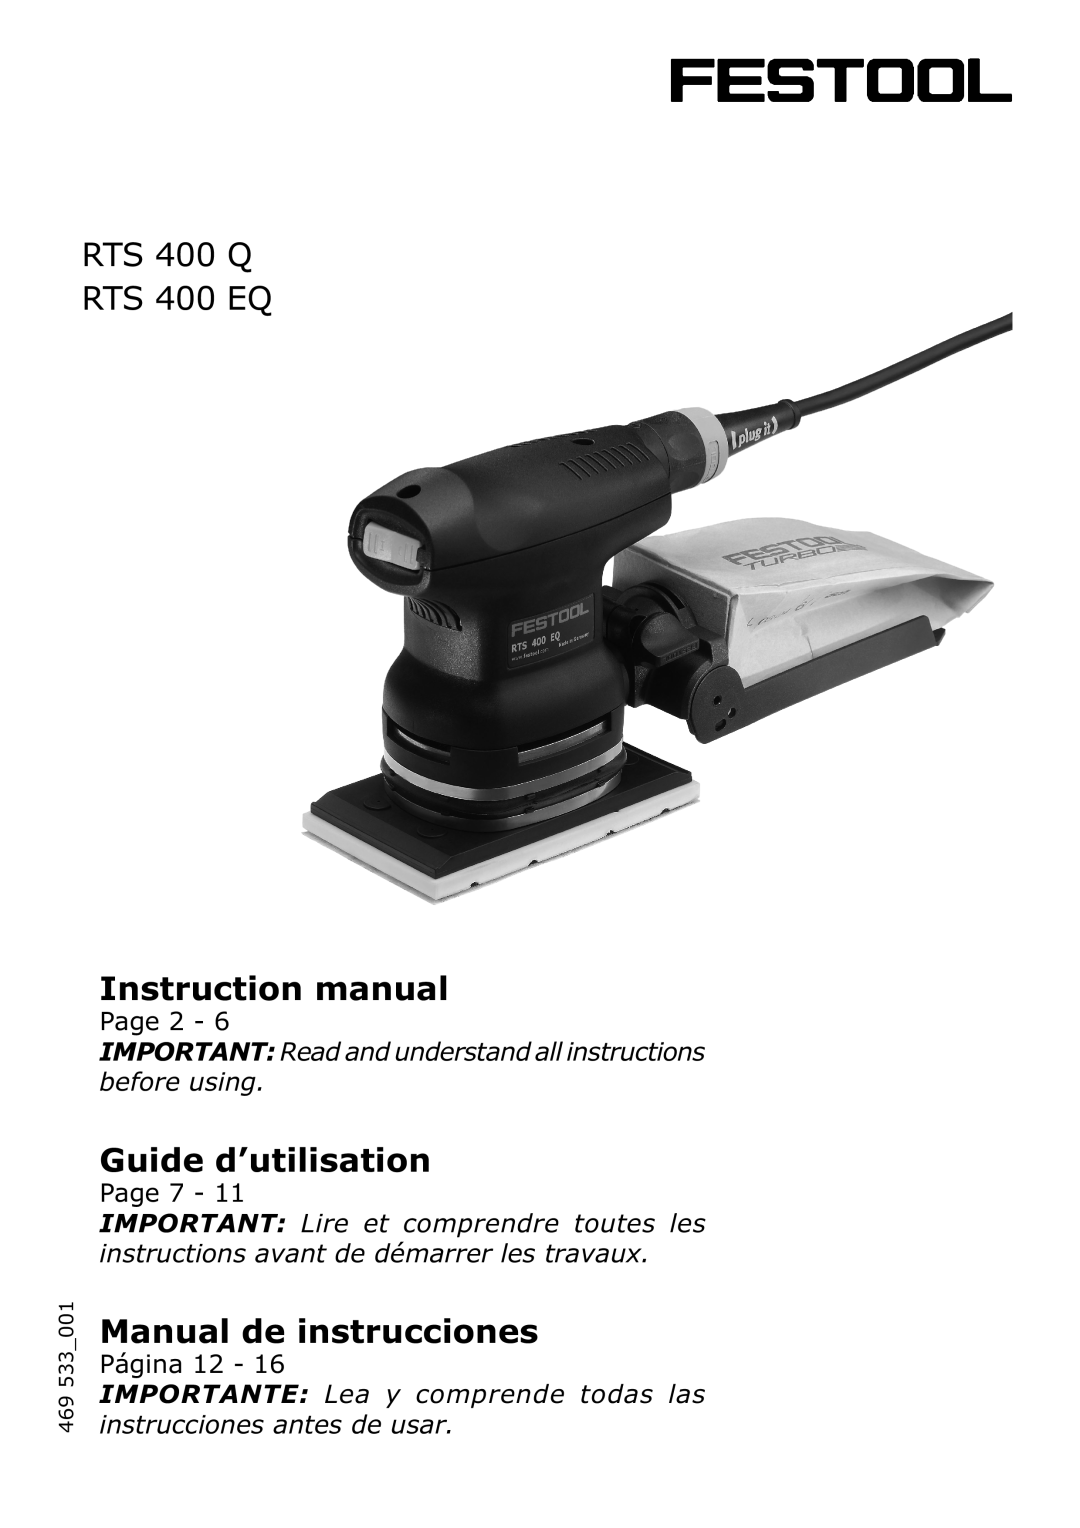 Festool PN567863 instruction manual RTS 400 Q RTS 400 EQ, Instruction manual, Guide d’utilisation, Manual de instrucciones 